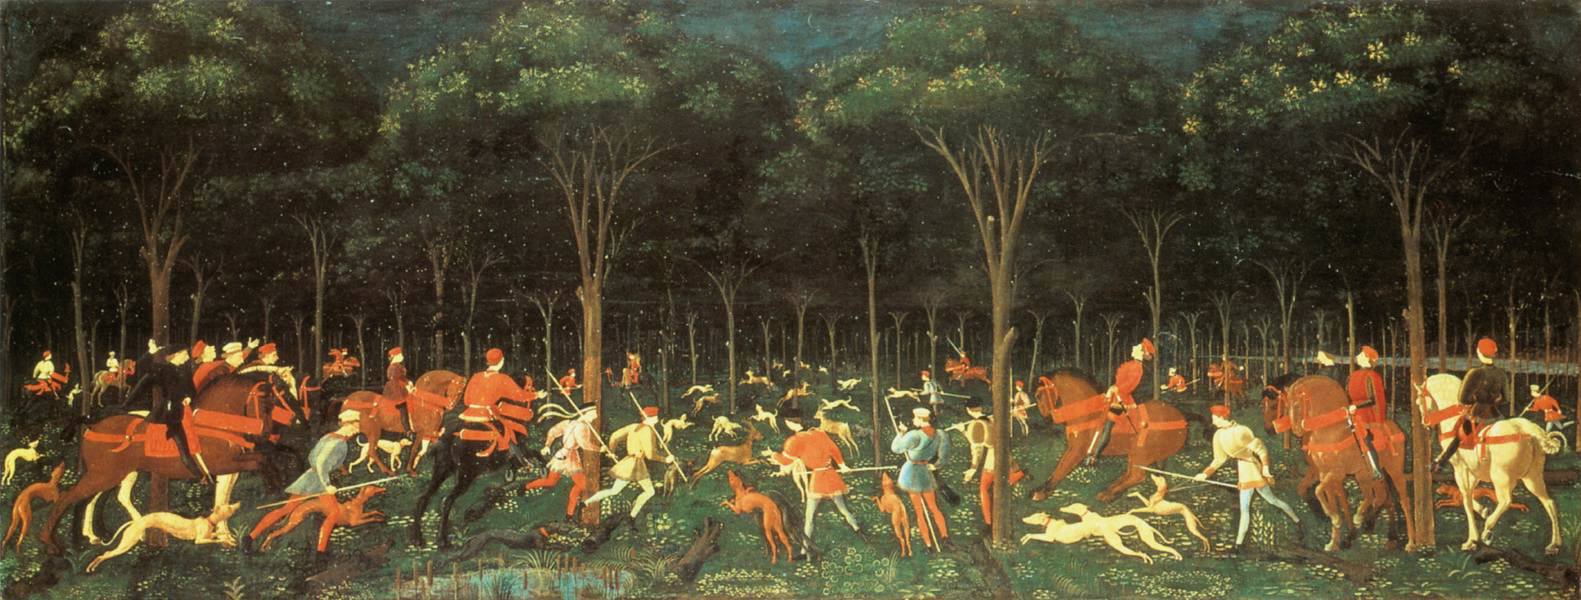 Chasse en forêt by Paolo Uccello - c. 1470 - 65 cm × 165 cm Ashmolean Museum